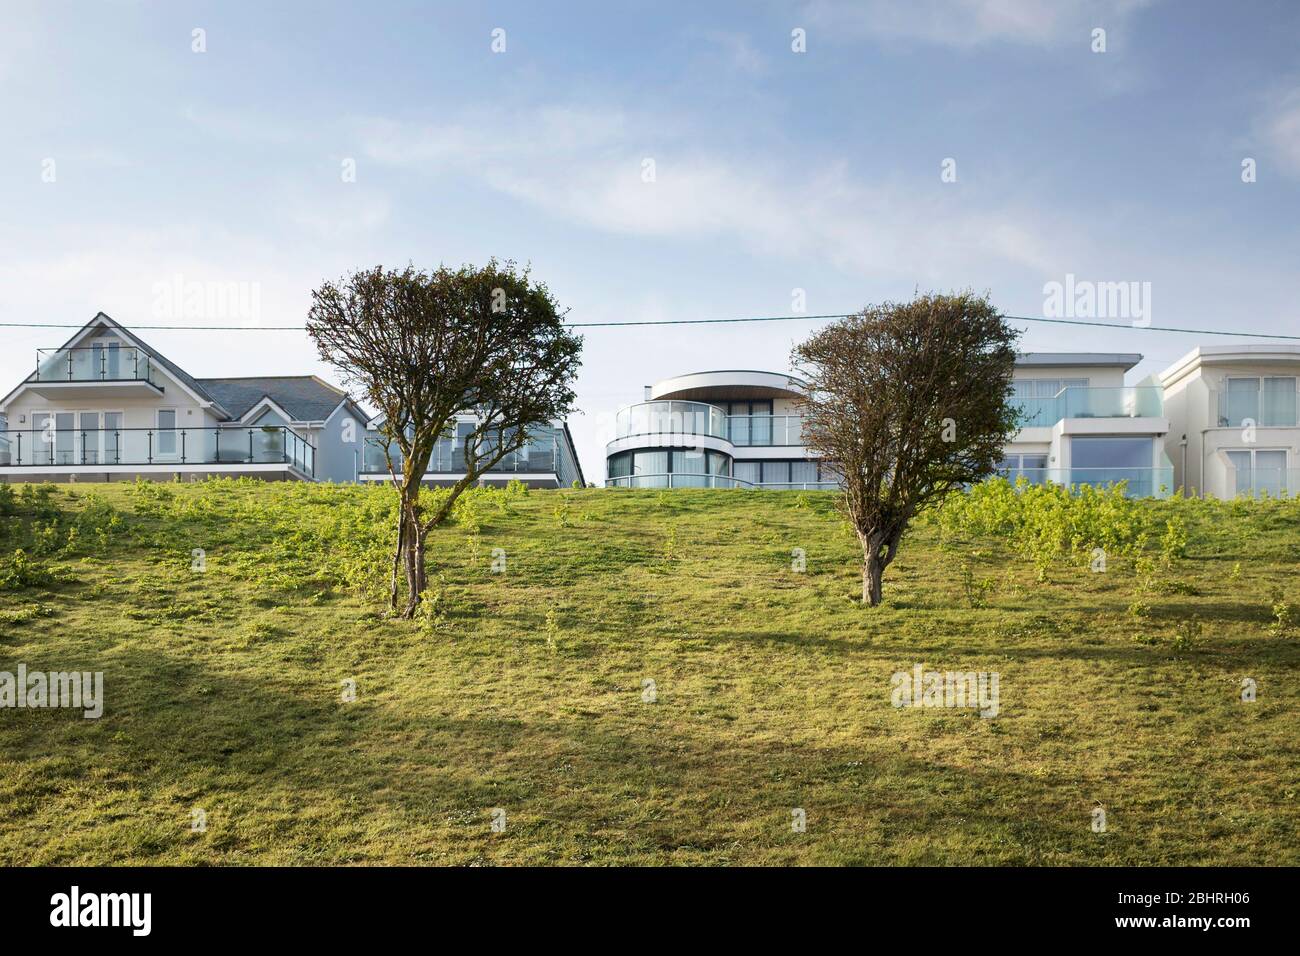 Rangée de la plage, grandes maisons modernes derrière deux petits arbres sur une rive herbeuse à Seasalter, Kent Angleterre Banque D'Images